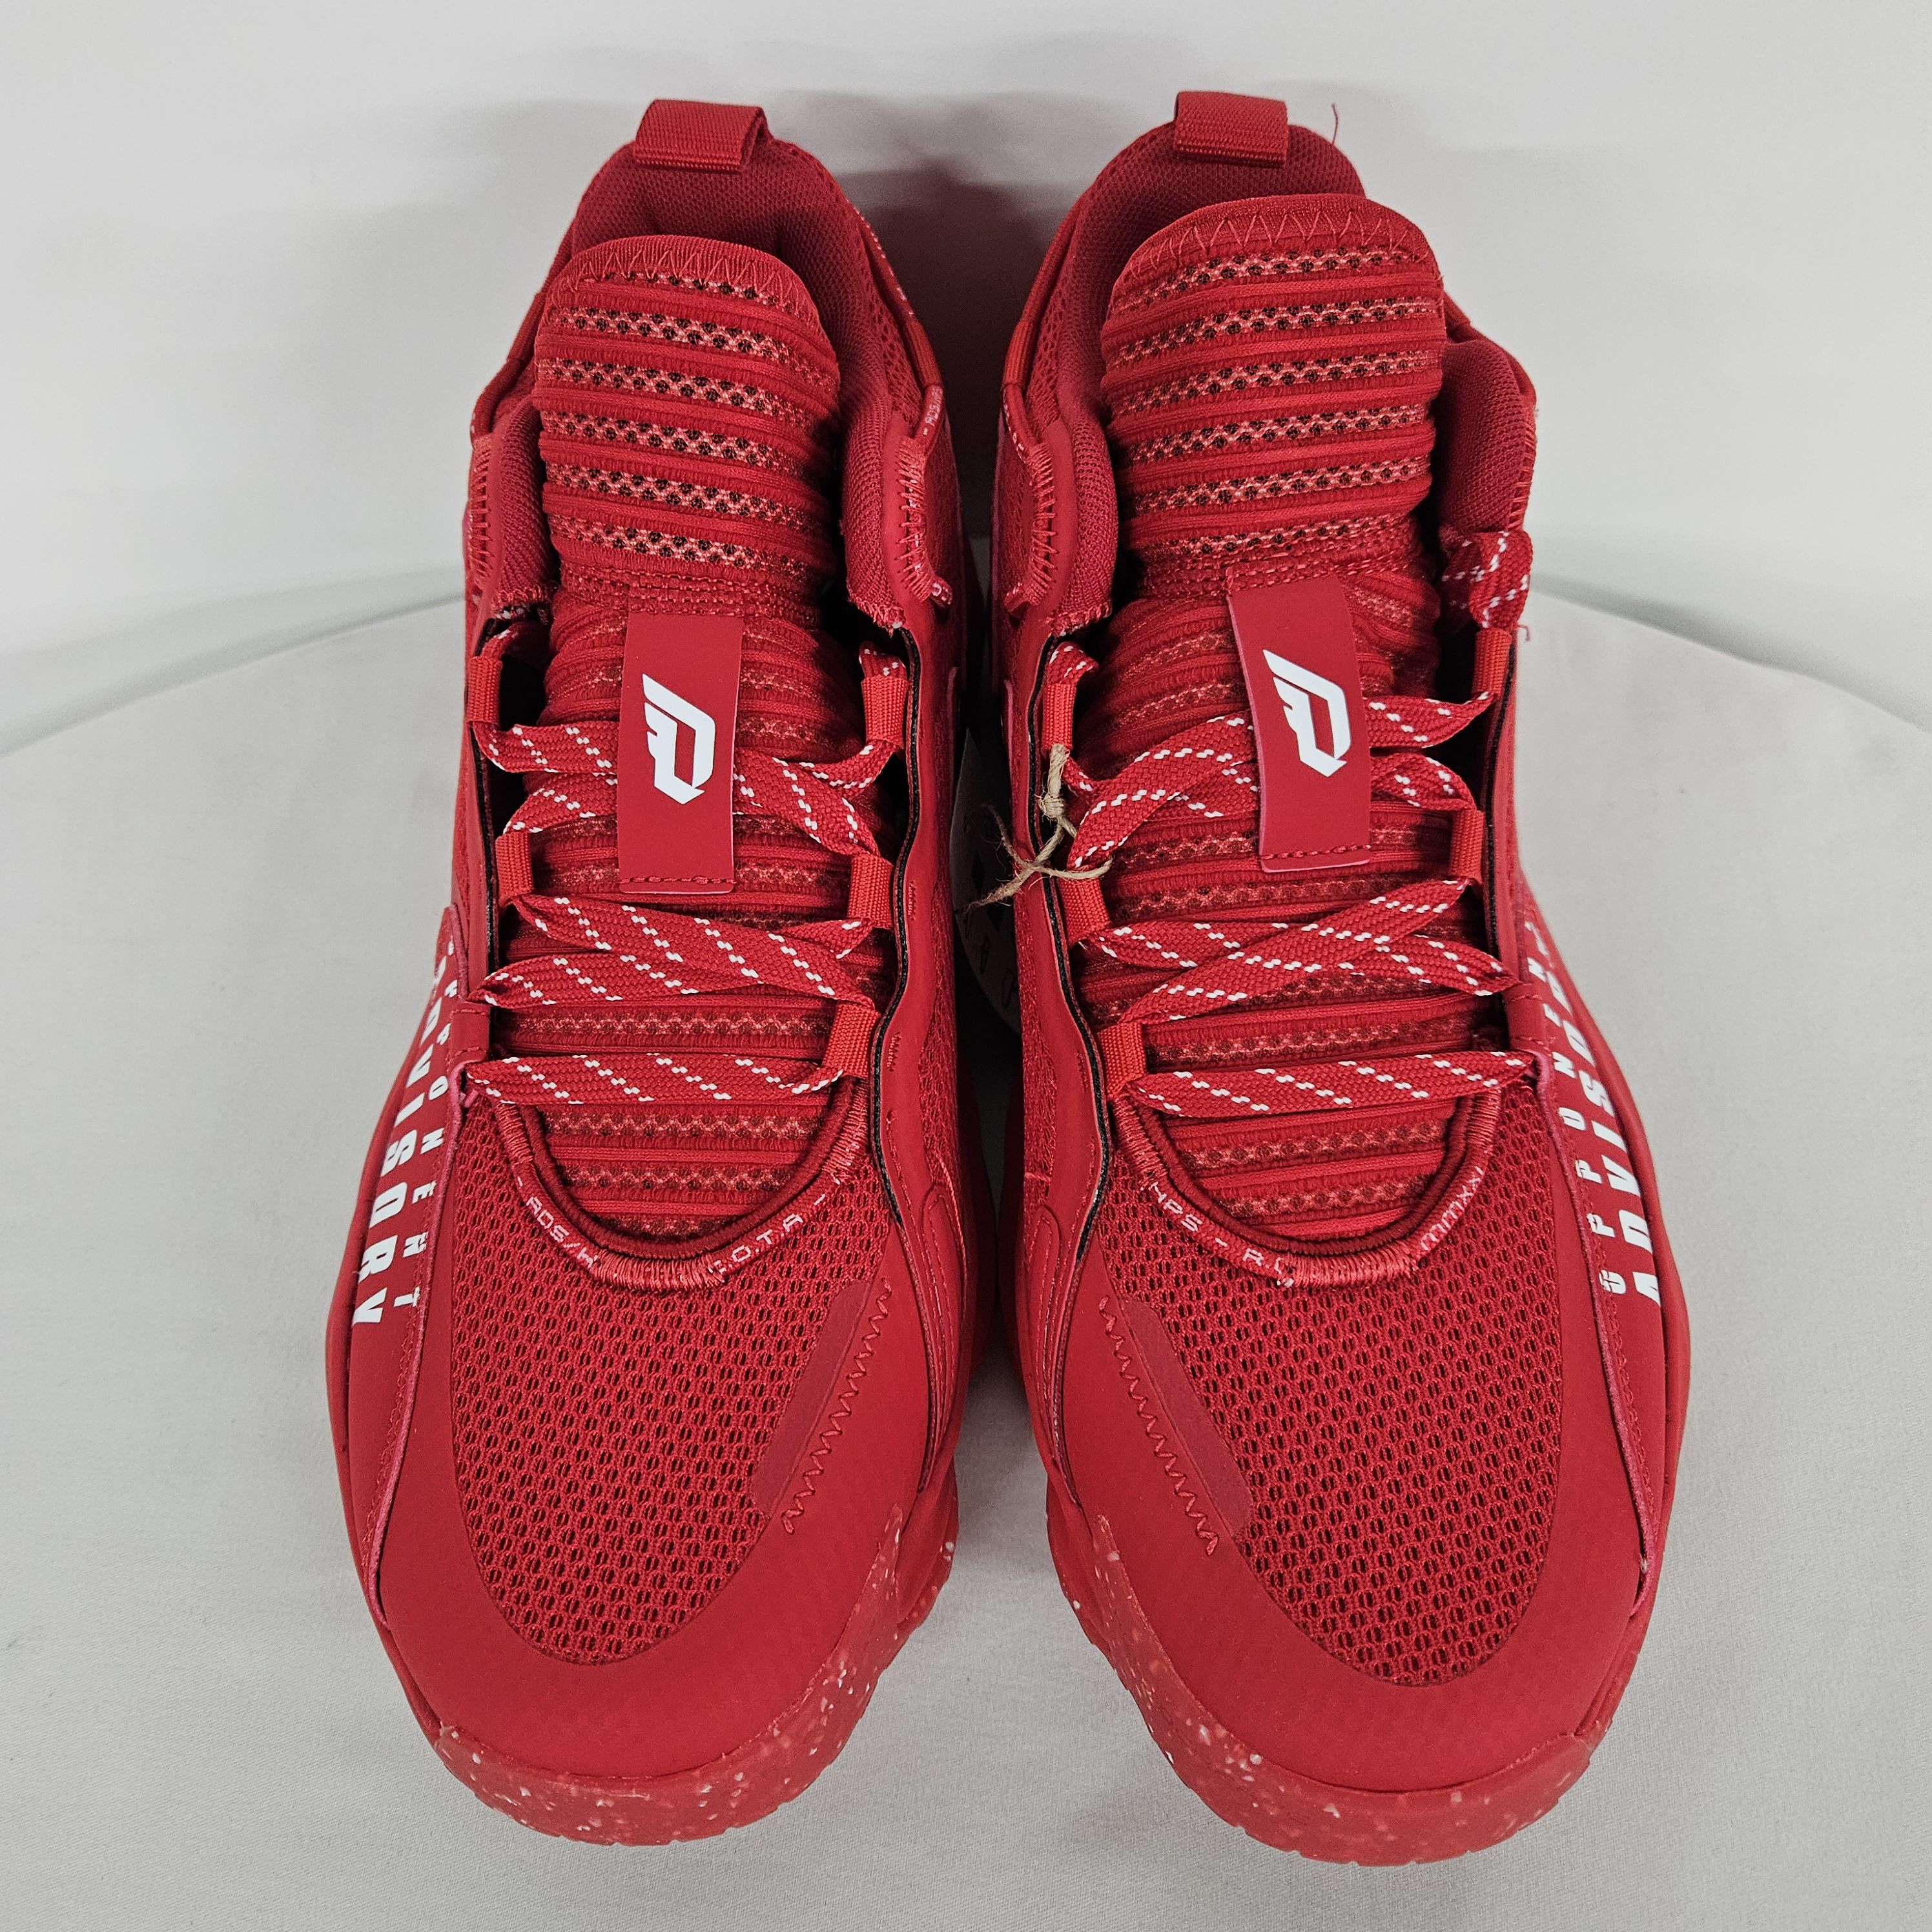 adidas unisex adult dame 7 extply basketball shoe